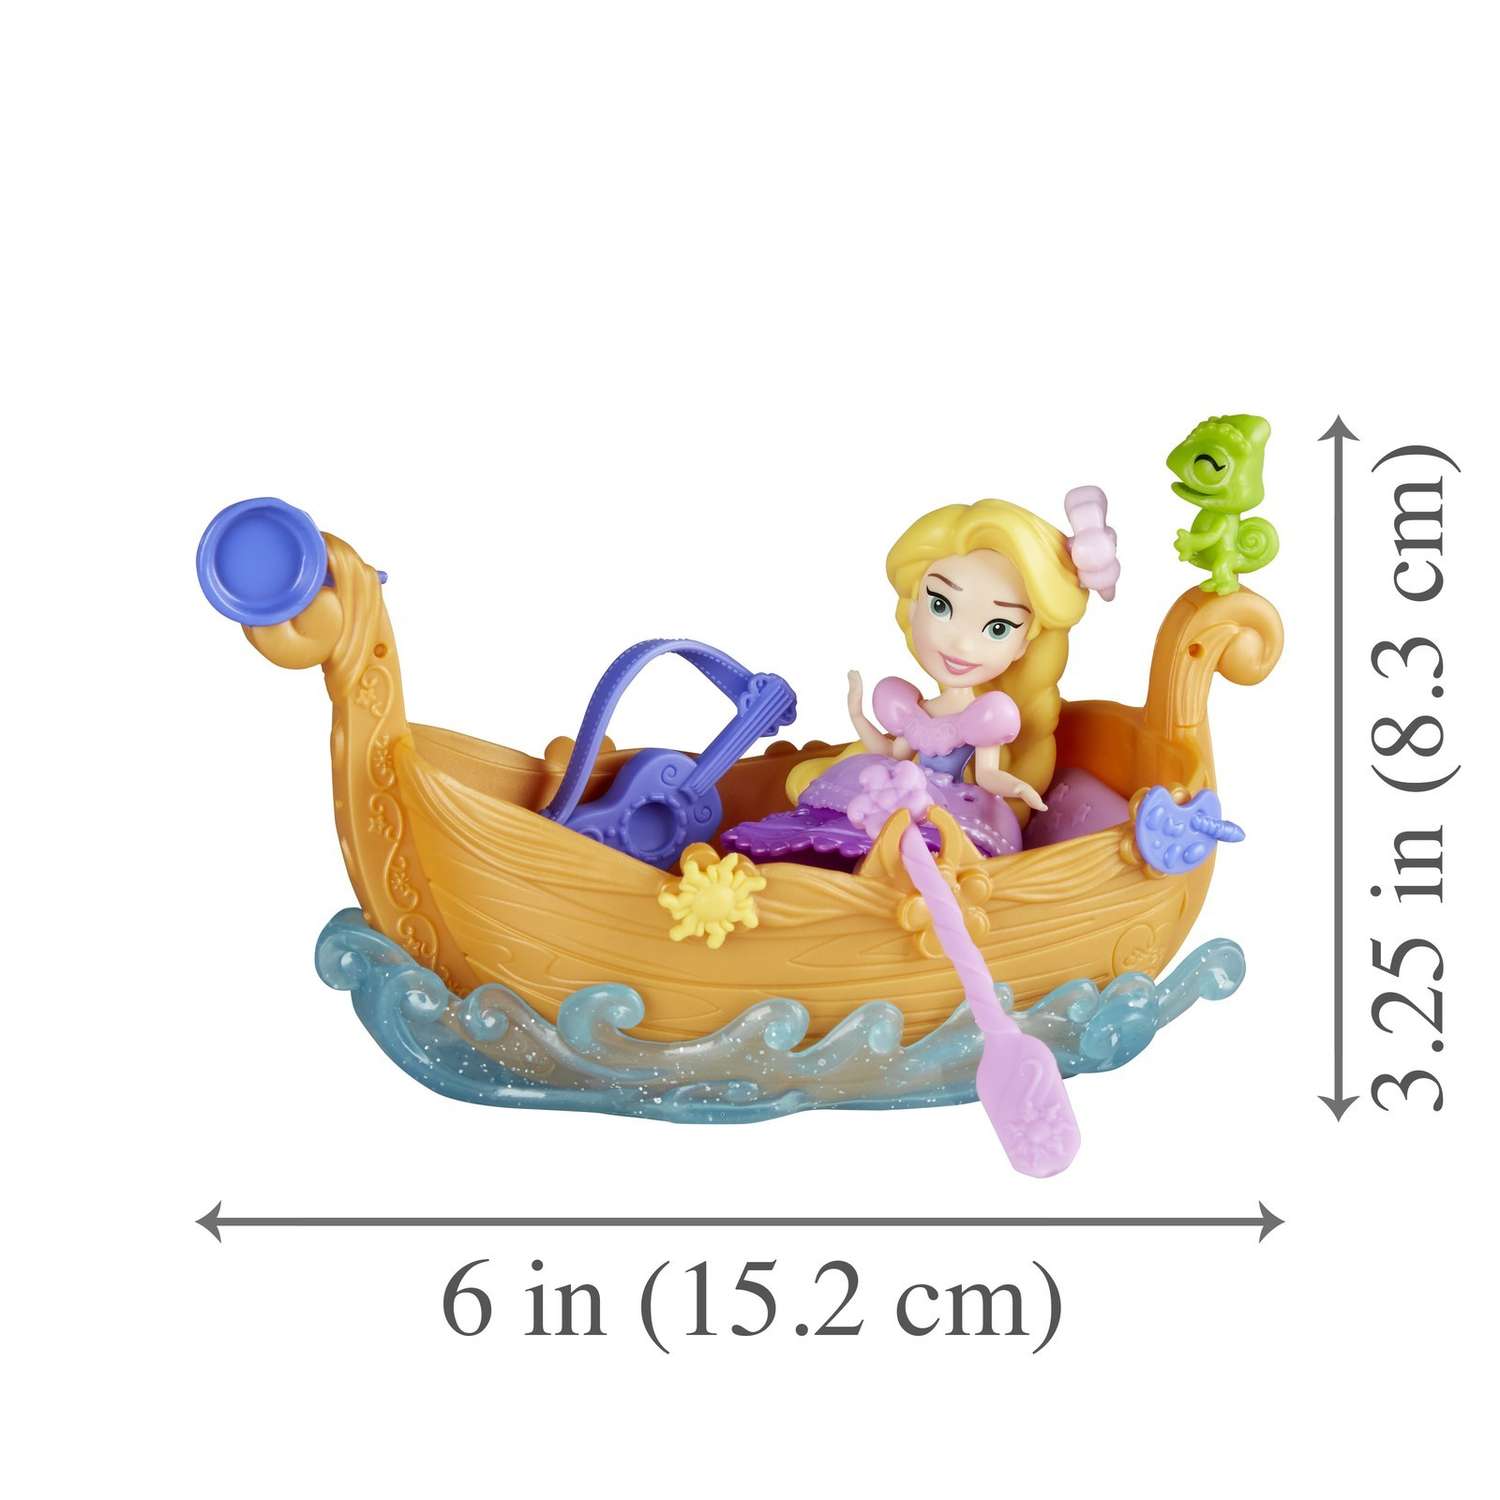 Набор Princess Disney Фигурка и лодка в ассортименте E0068EU4 E0068EU4 - фото 12